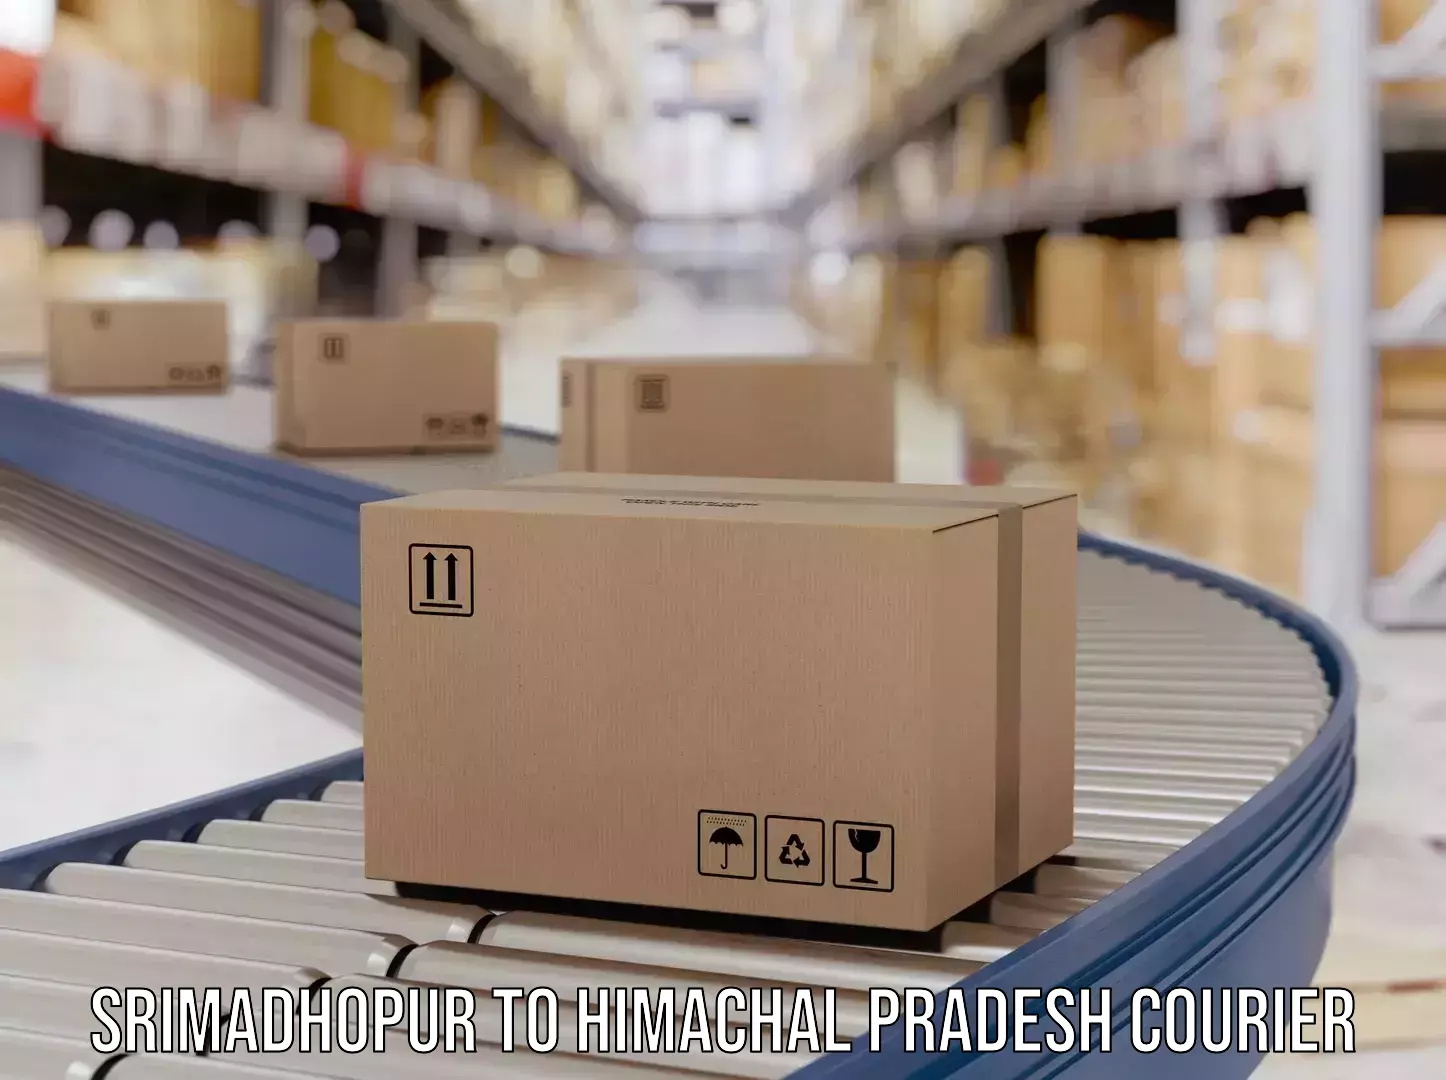 Package delivery network Srimadhopur to Sundar Nagar